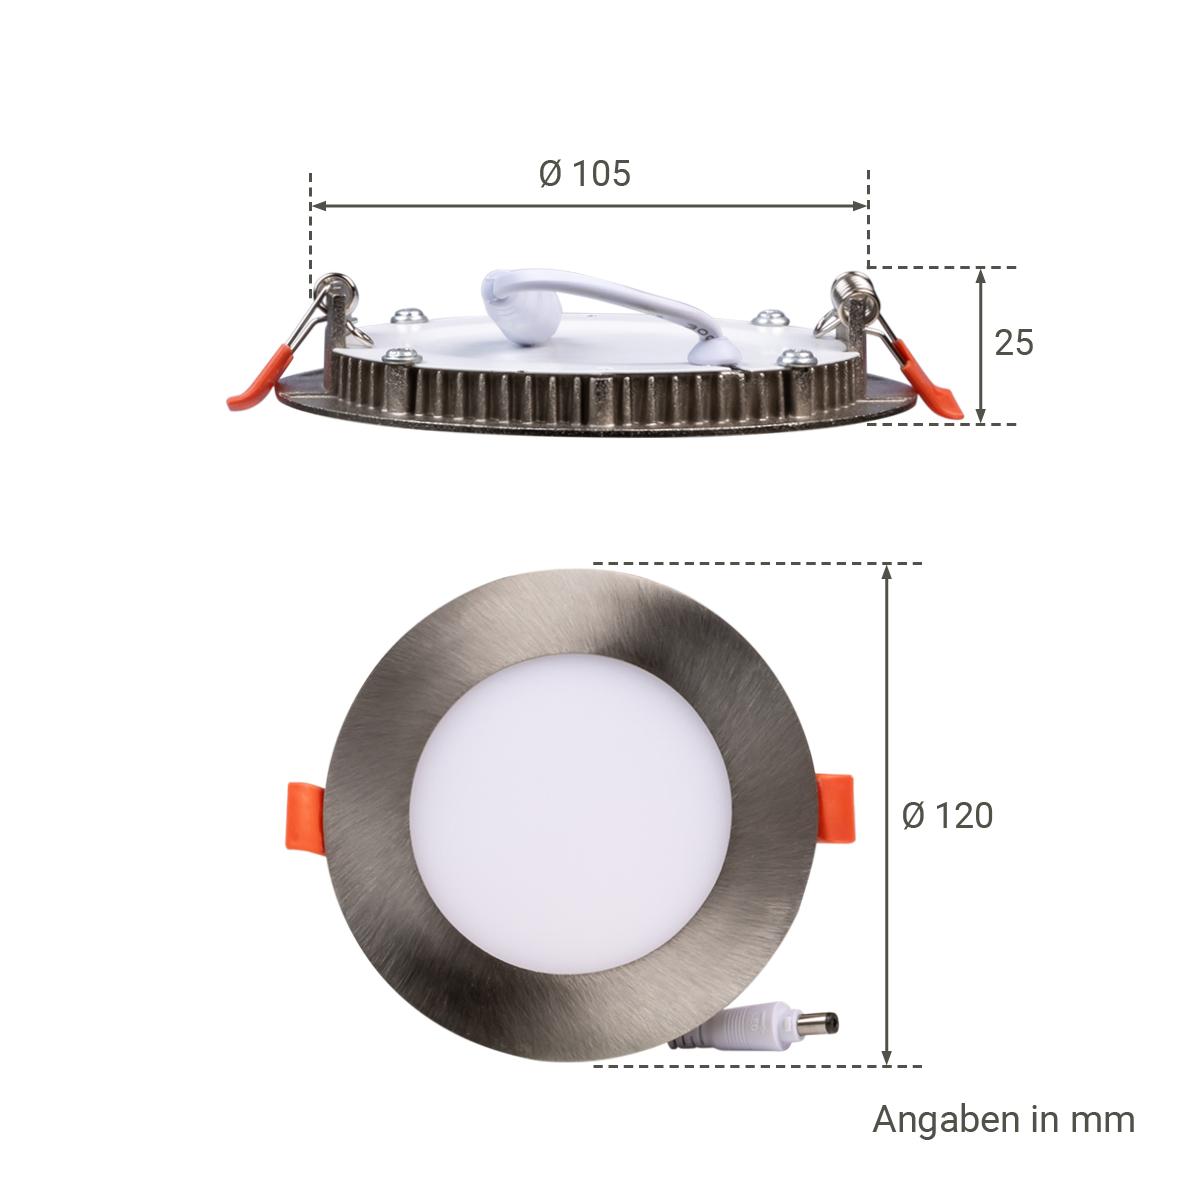 LED Panel Einbaustrahler rund silber - Lichtfarbe: Neutralweiß 4000K - Ausführung: 6W Ø120mm Ausschnitt Ø105mm